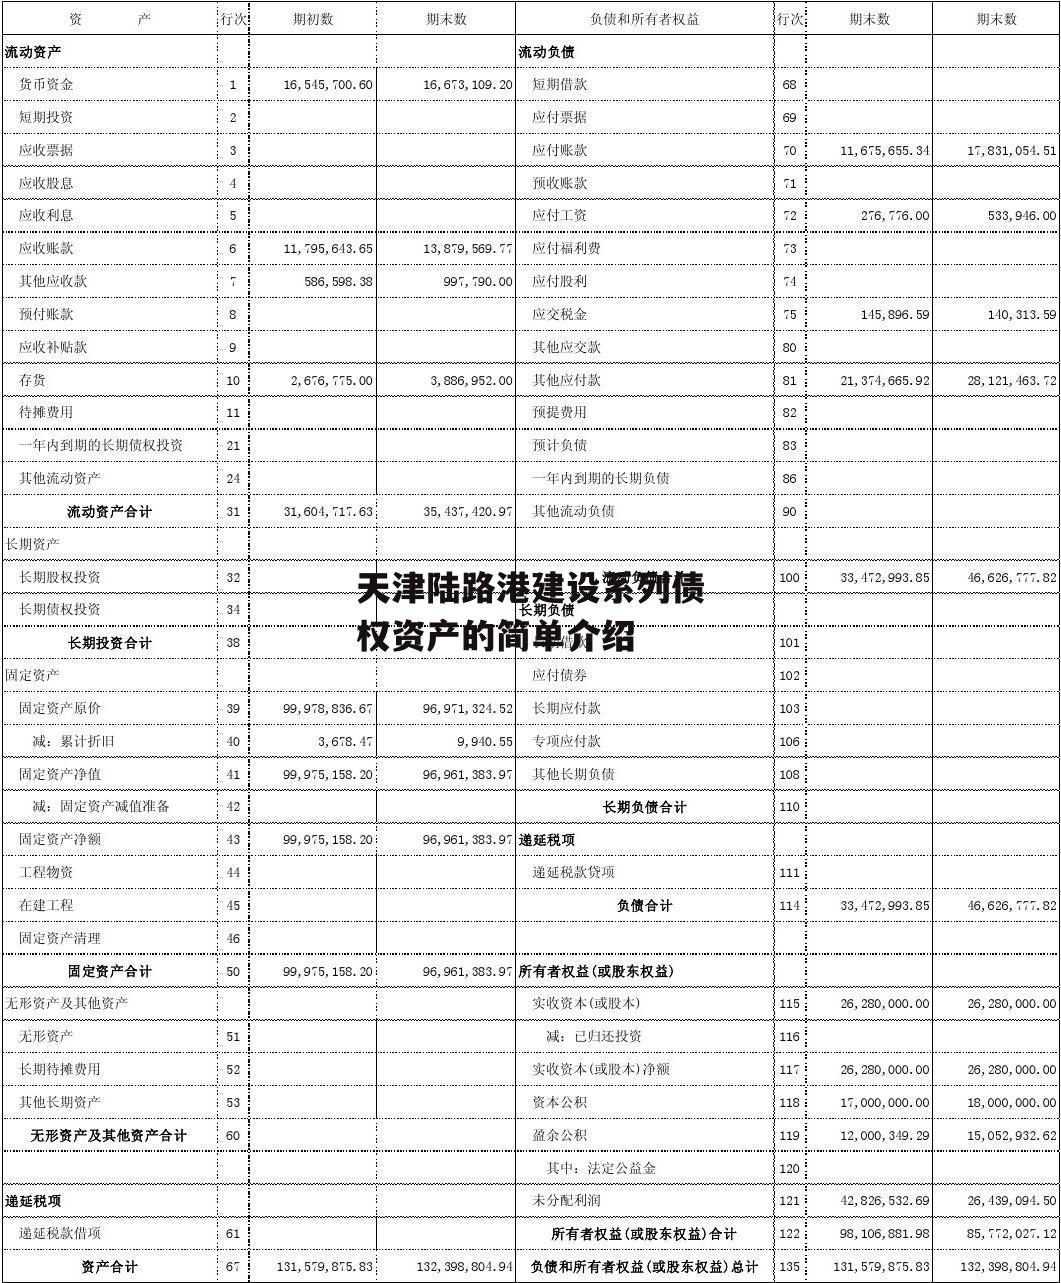 天津陆路港建设系列债权资产的简单介绍